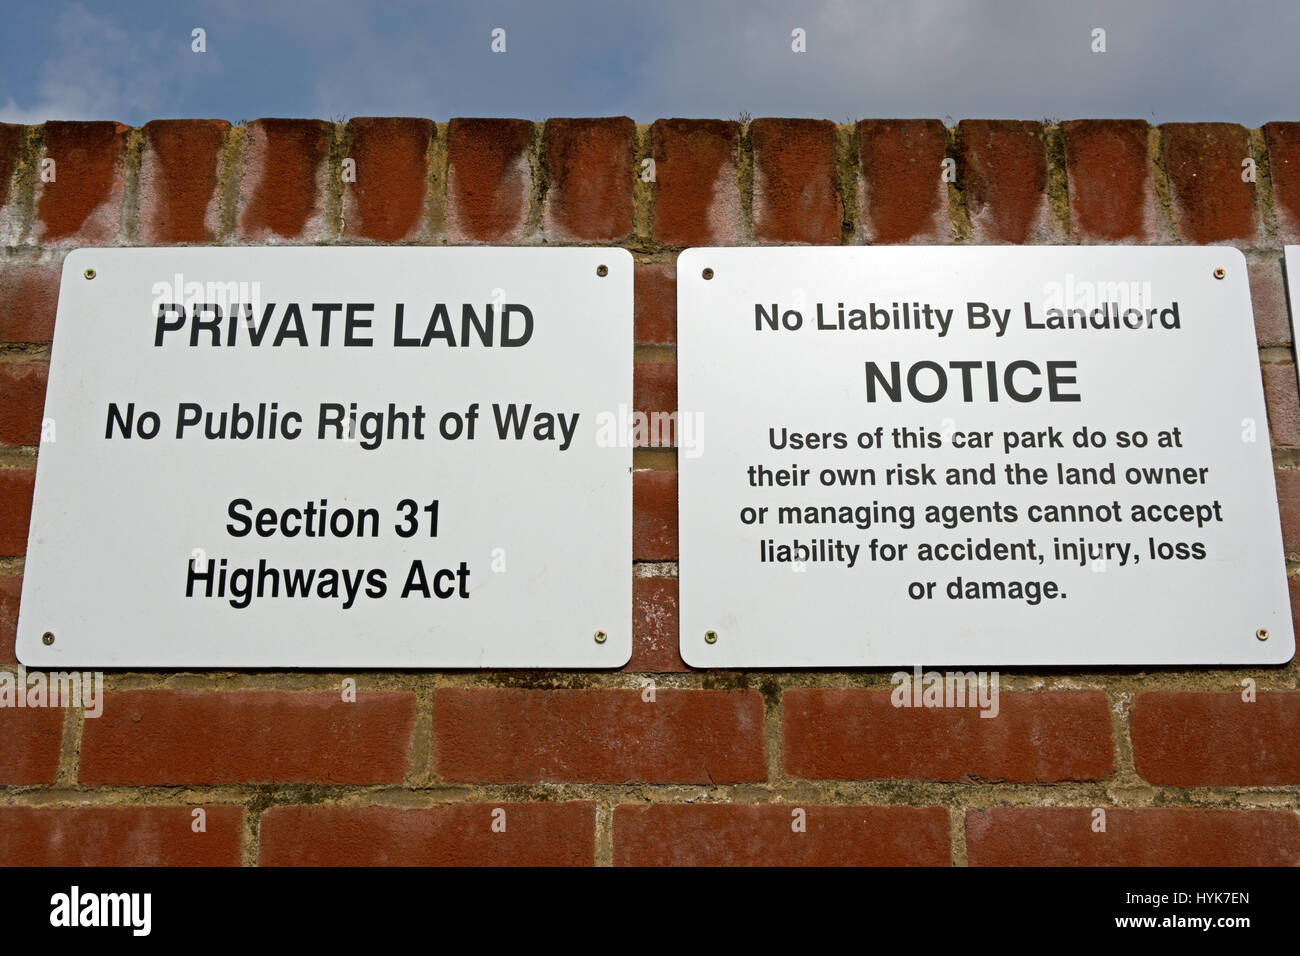 Des affiches indiquant les terres privées, aucun droit de passage public, l'article 31 de la loi sur les routes, et aucune responsabilité par le propriétaire du parc de voiture Banque D'Images